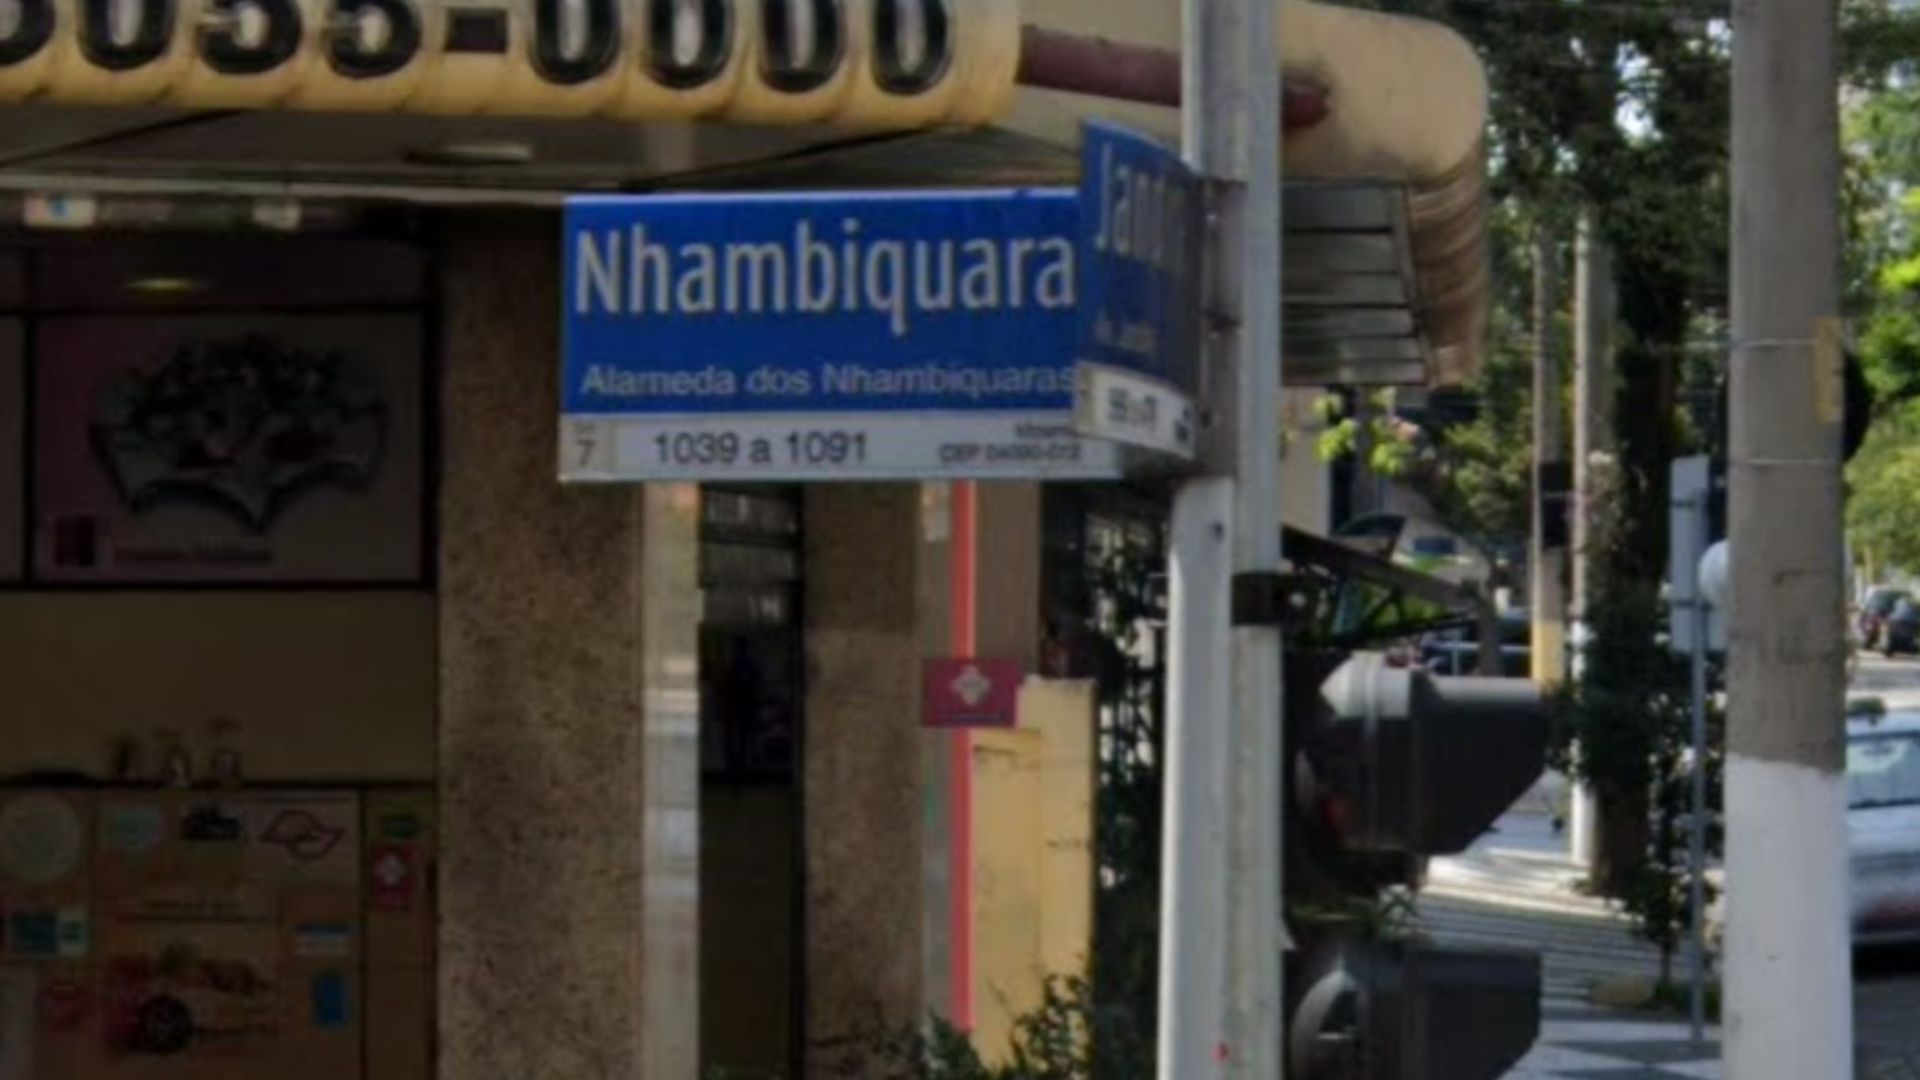 Alameda dos Nhambiquaras